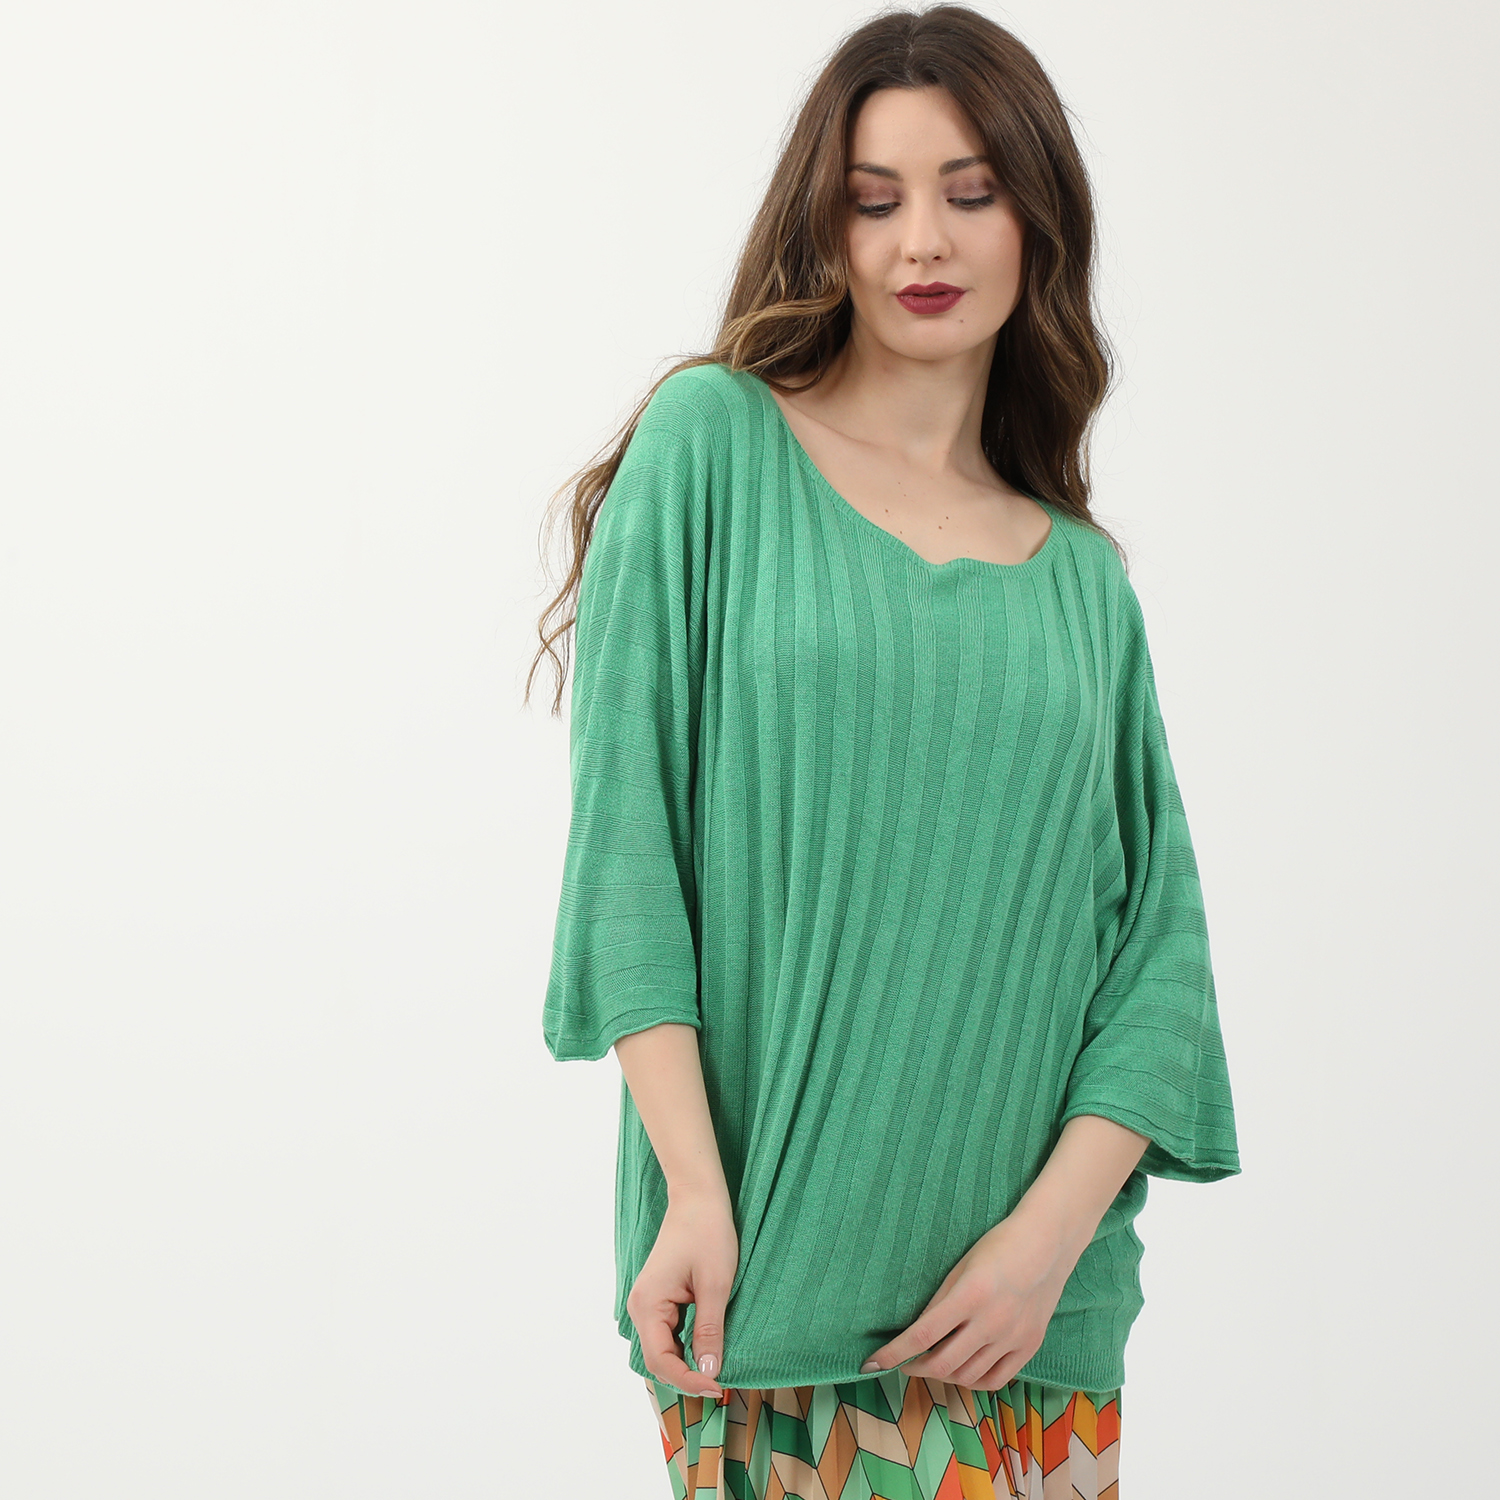 Γυναικεία/Ρούχα/Μπλούζες/Μακρυμάνικες ATTRATTIVO - Γυναικείο ελαφρύ πλεκτό ATTRATTIVO πράσινο